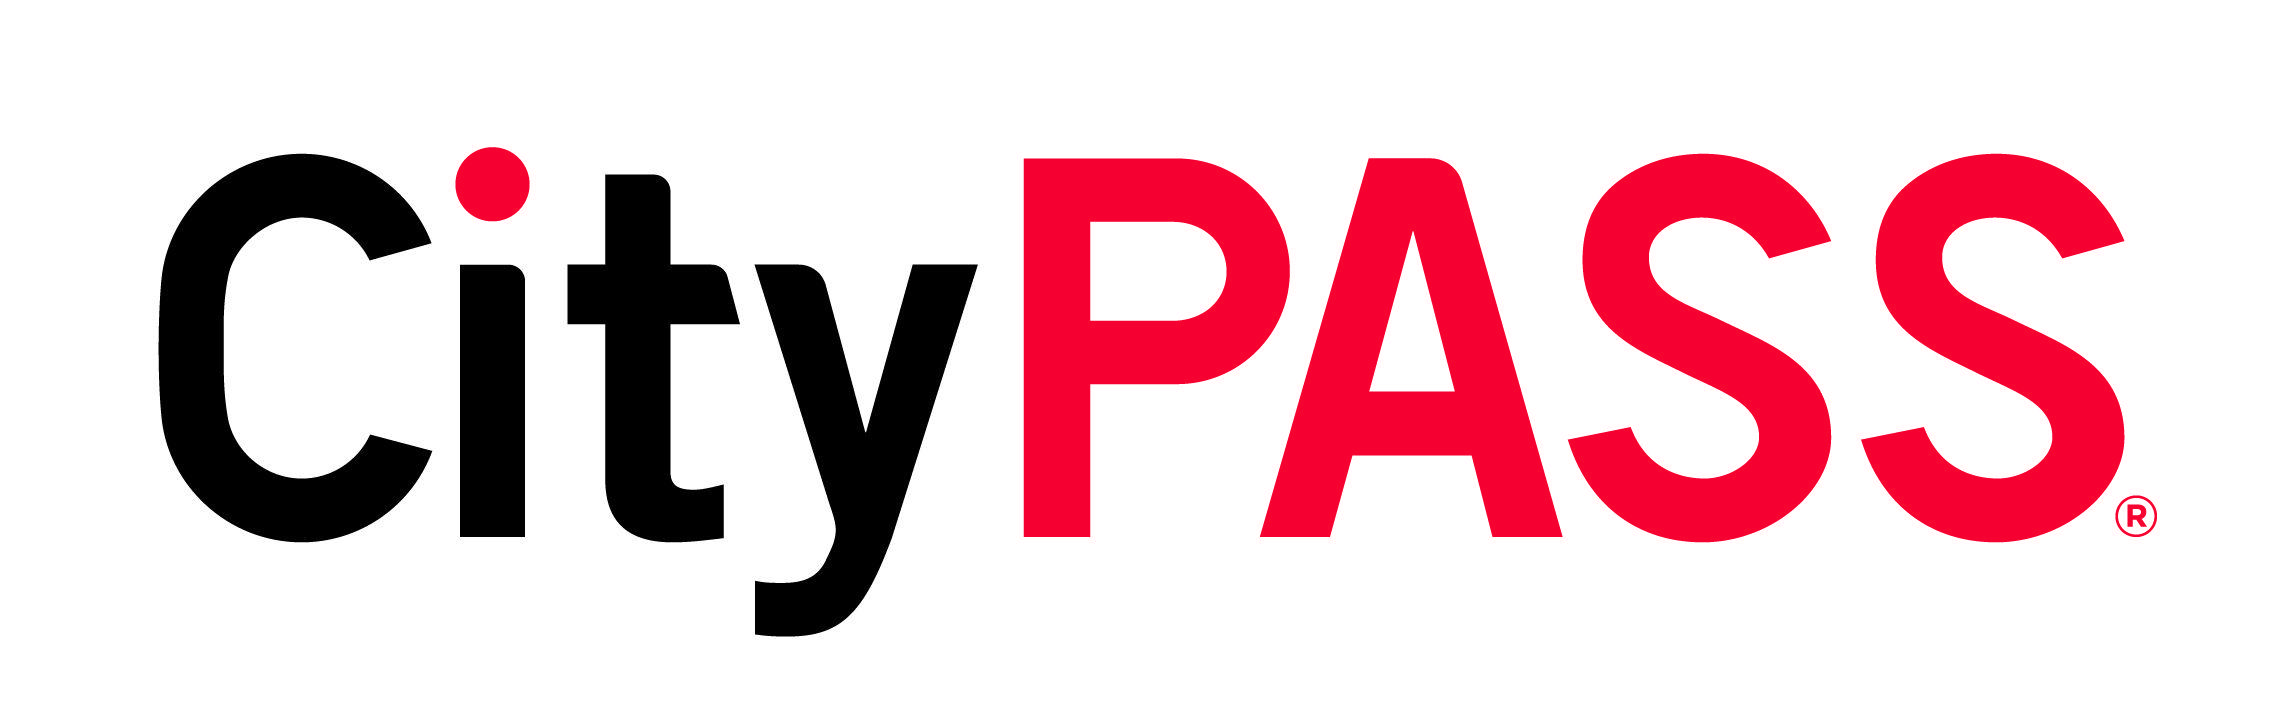 Pass Logo - Asset Library Logos CityPASS. CityPASS®